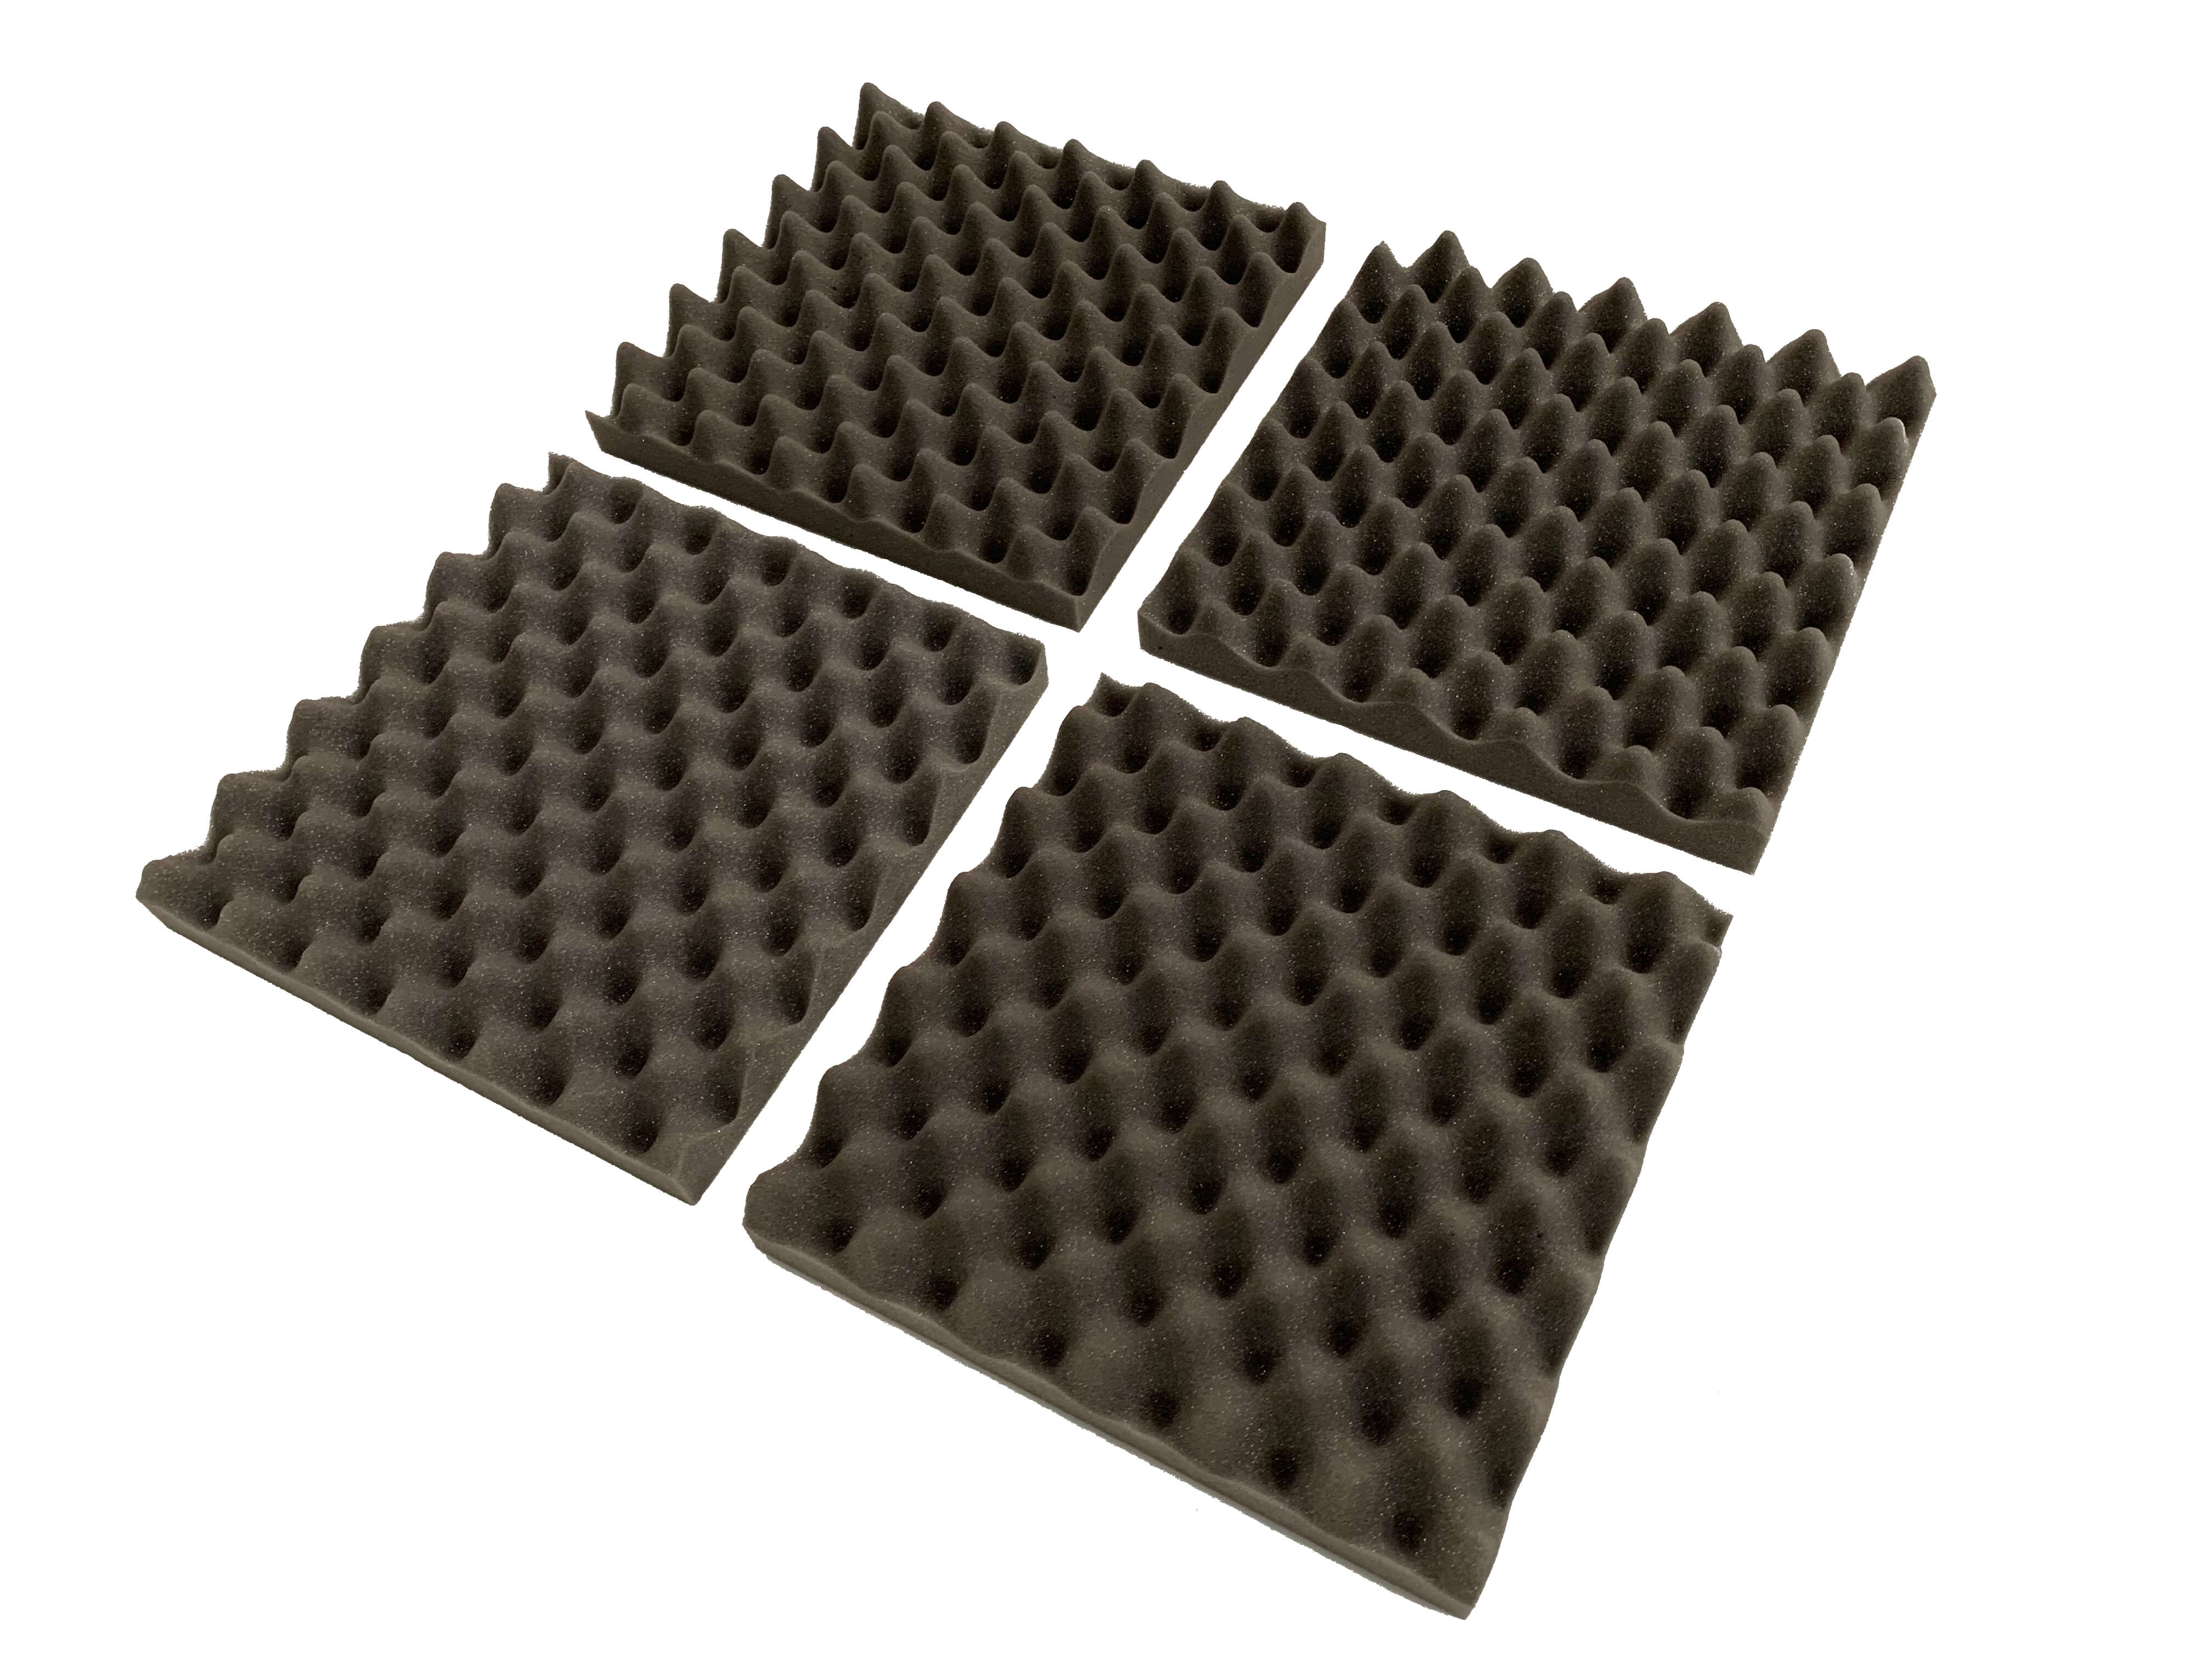 F . A . T . 12" Acoustic Studio Foam Tile Pack – 24 Tiles, 2.2qm Coverage - 0